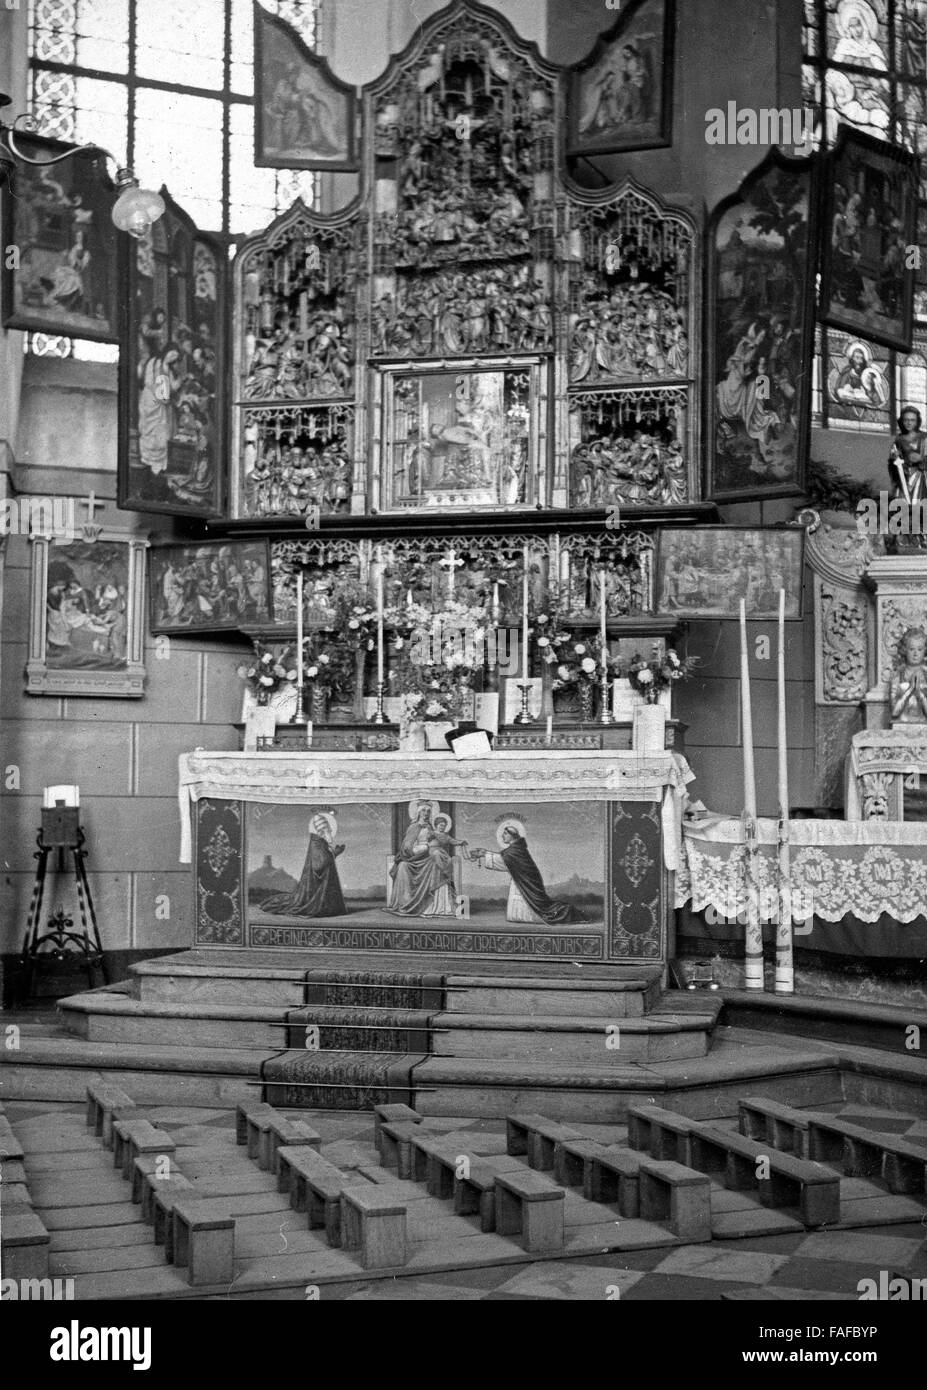 Hochaltar der Wallfahrtskirche St. Clemens in Heimbach in der Eifel, Deutschland 1930er Jahre bin. Der Altar der Wallfahrtskirche St. Clemens in Heimbach in der Eifel, Deutschland der 1930er Jahre. Stockfoto